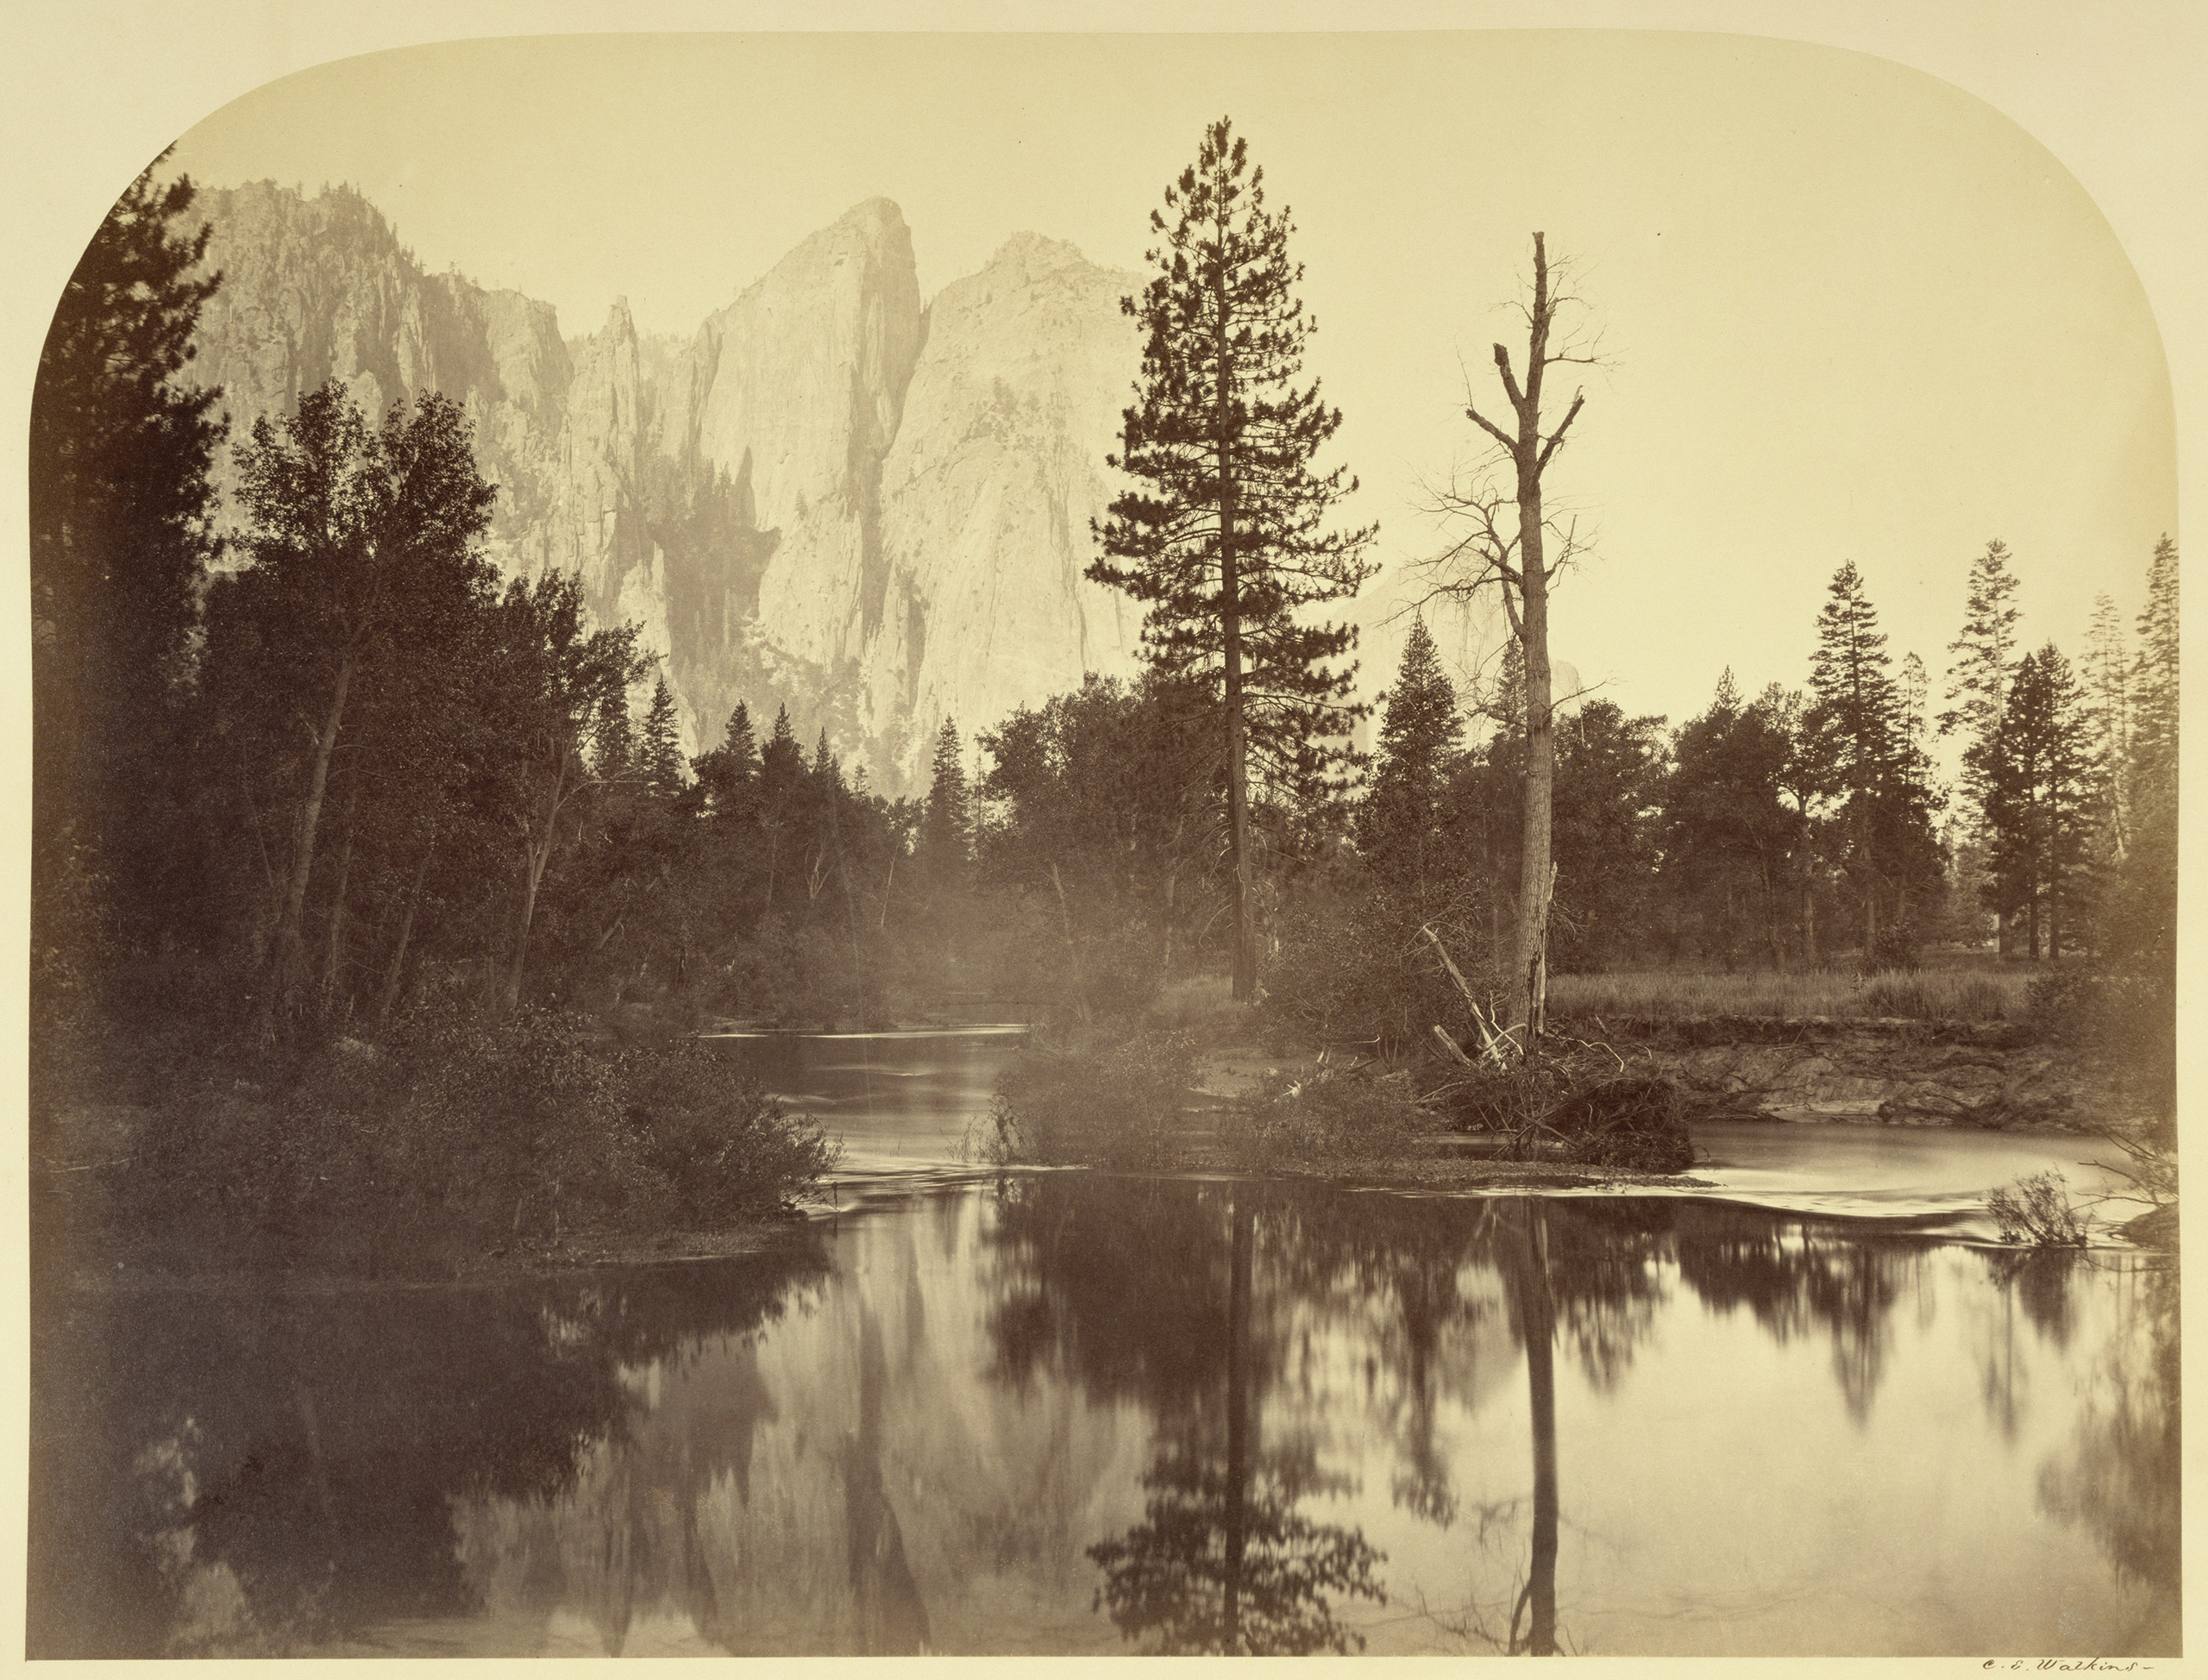 River View - Down the Valley Yo Semite. 1861.